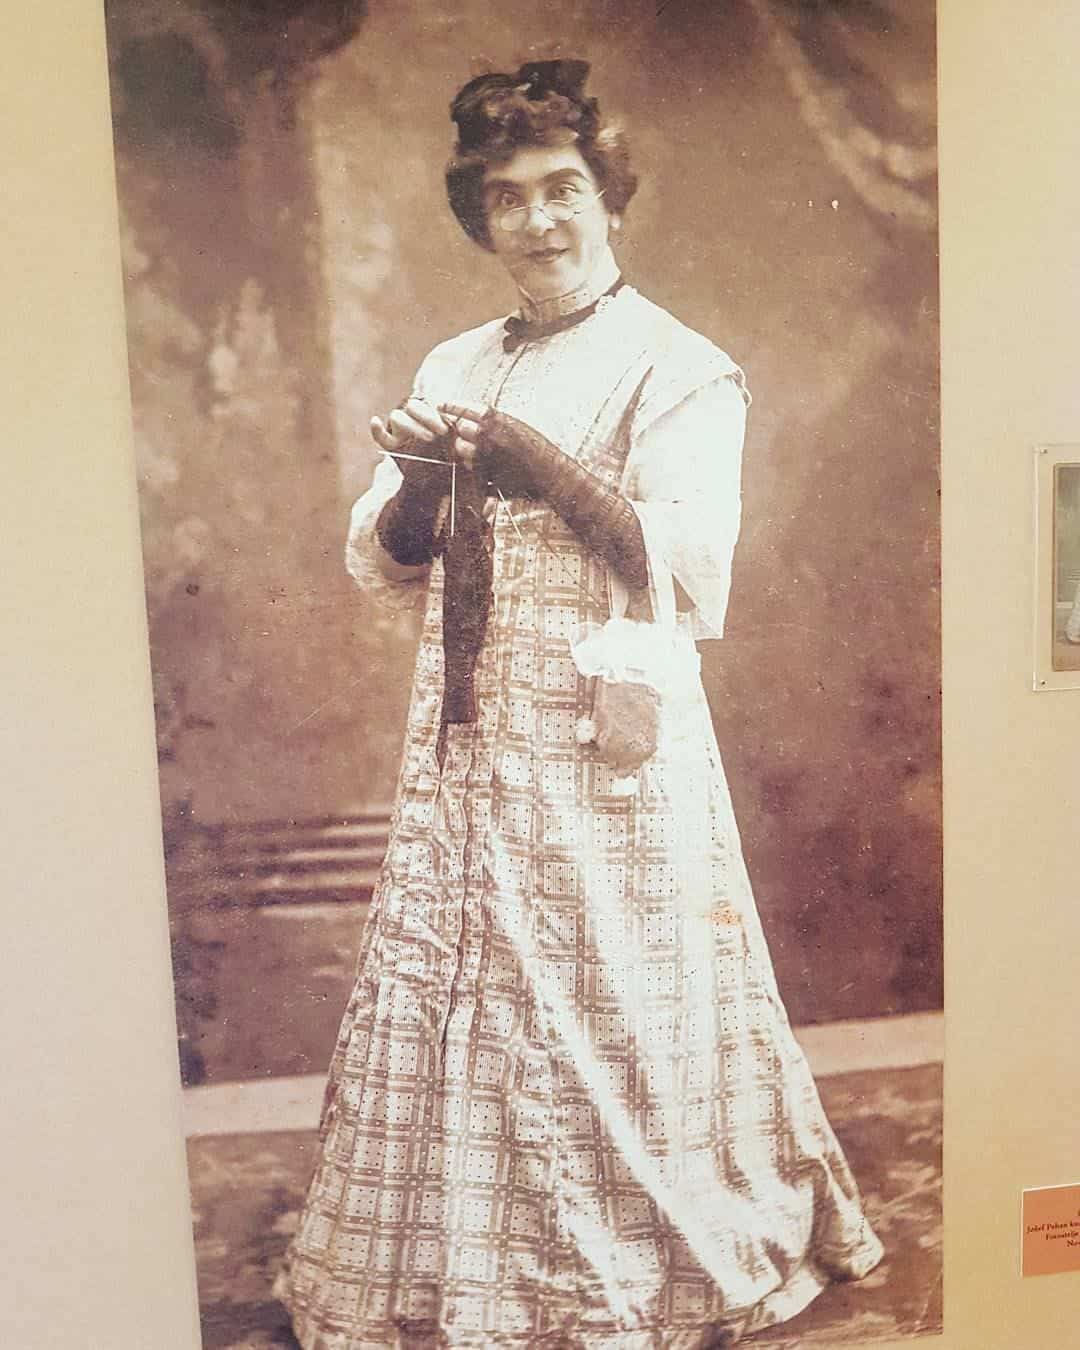 Ispred svog vremena: Fotografija Jožefa Pehana u ženskoj odeći